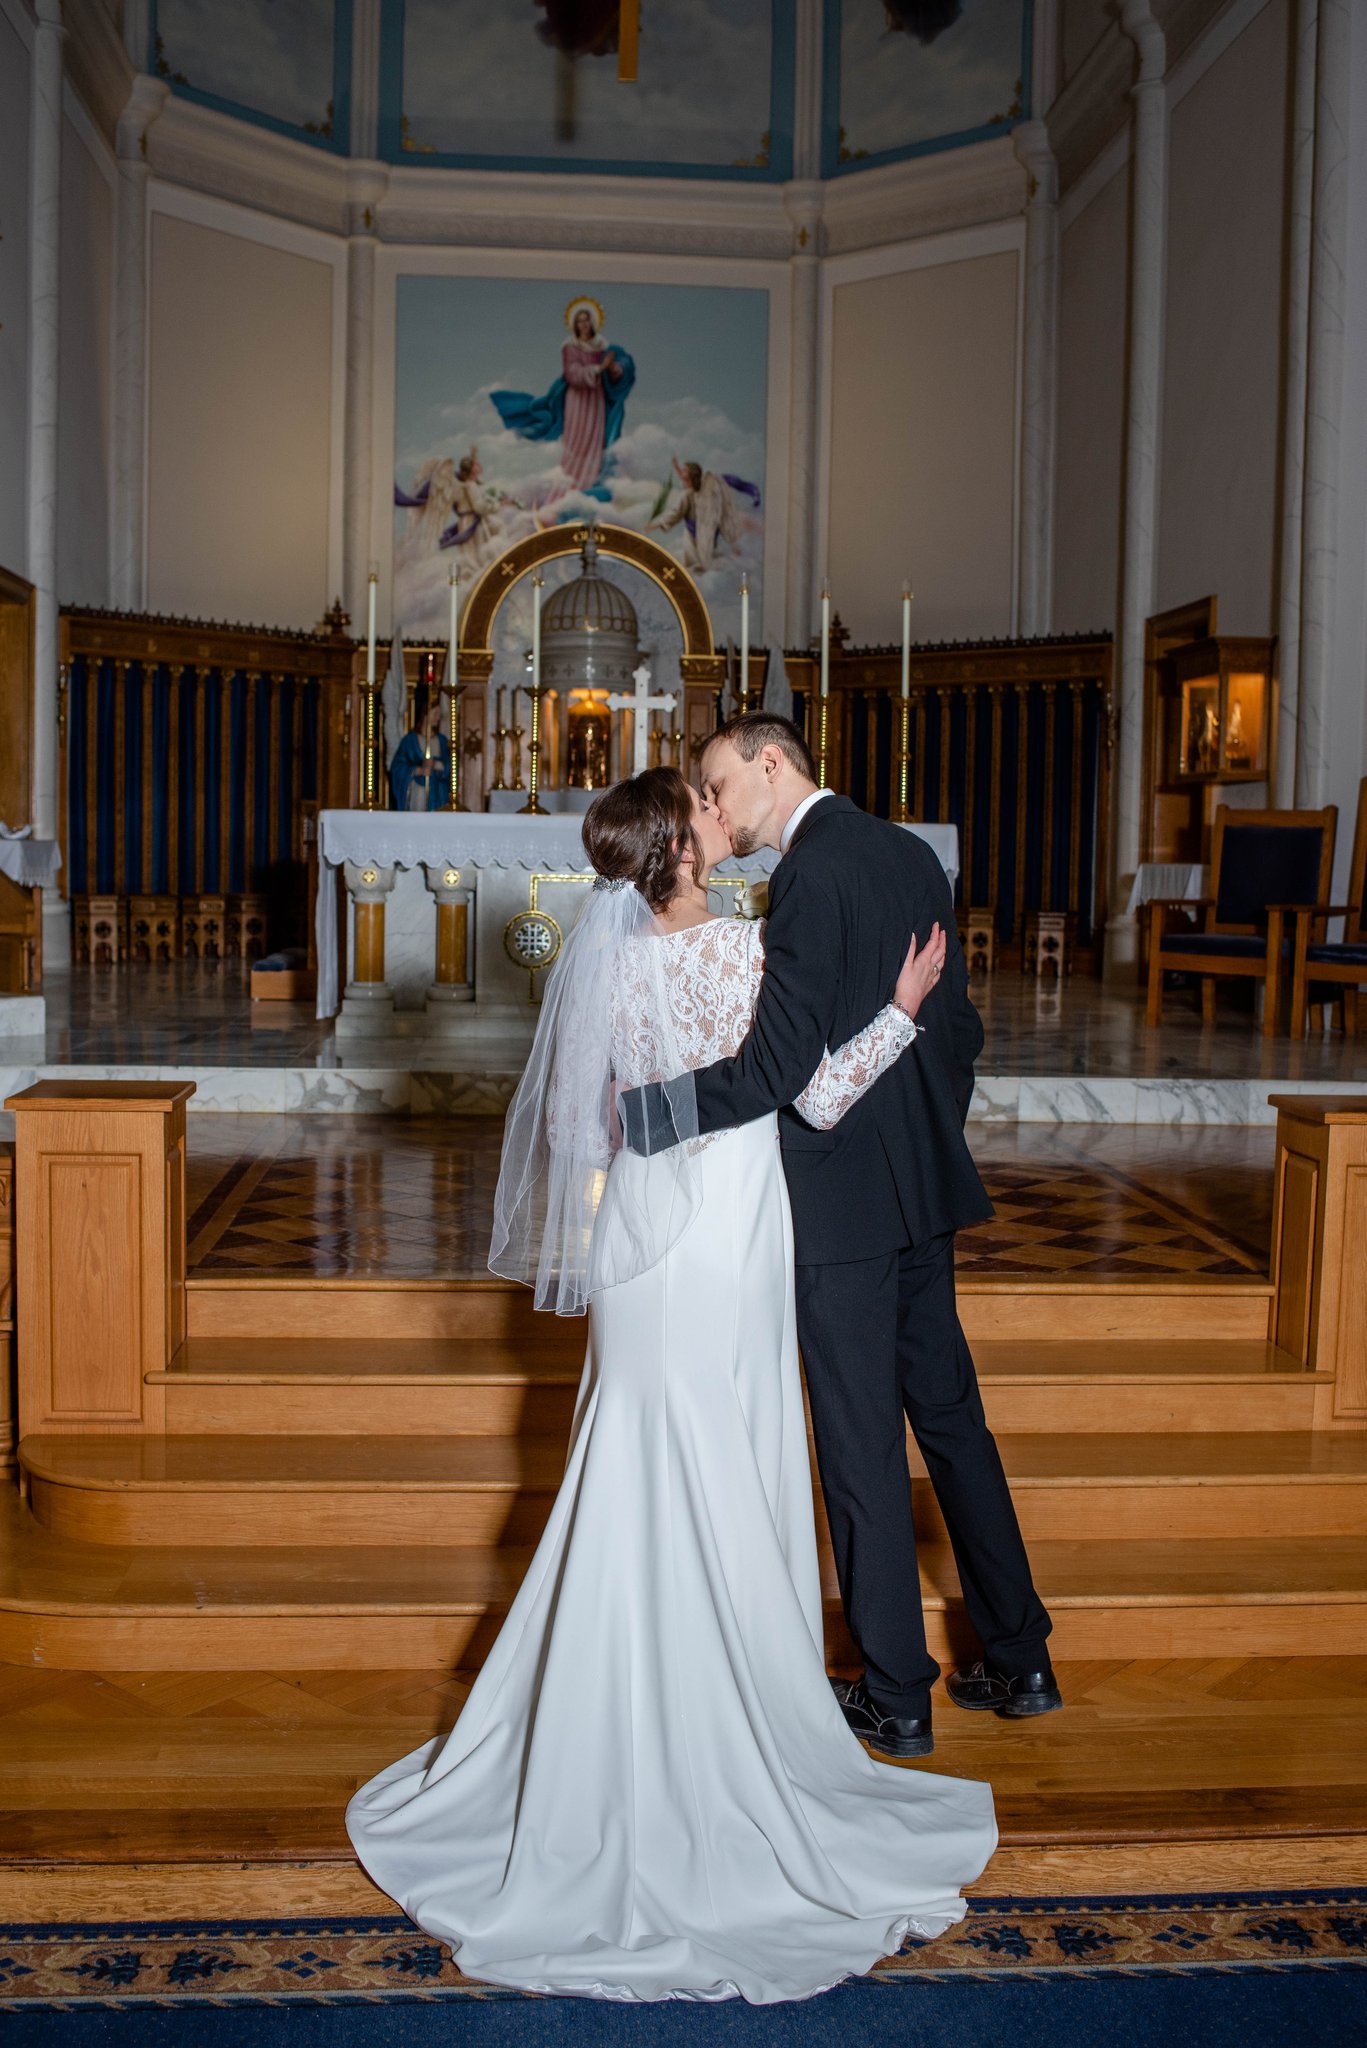 DSC 9163 1 - John and Faith's Wedding | Fargo, ND